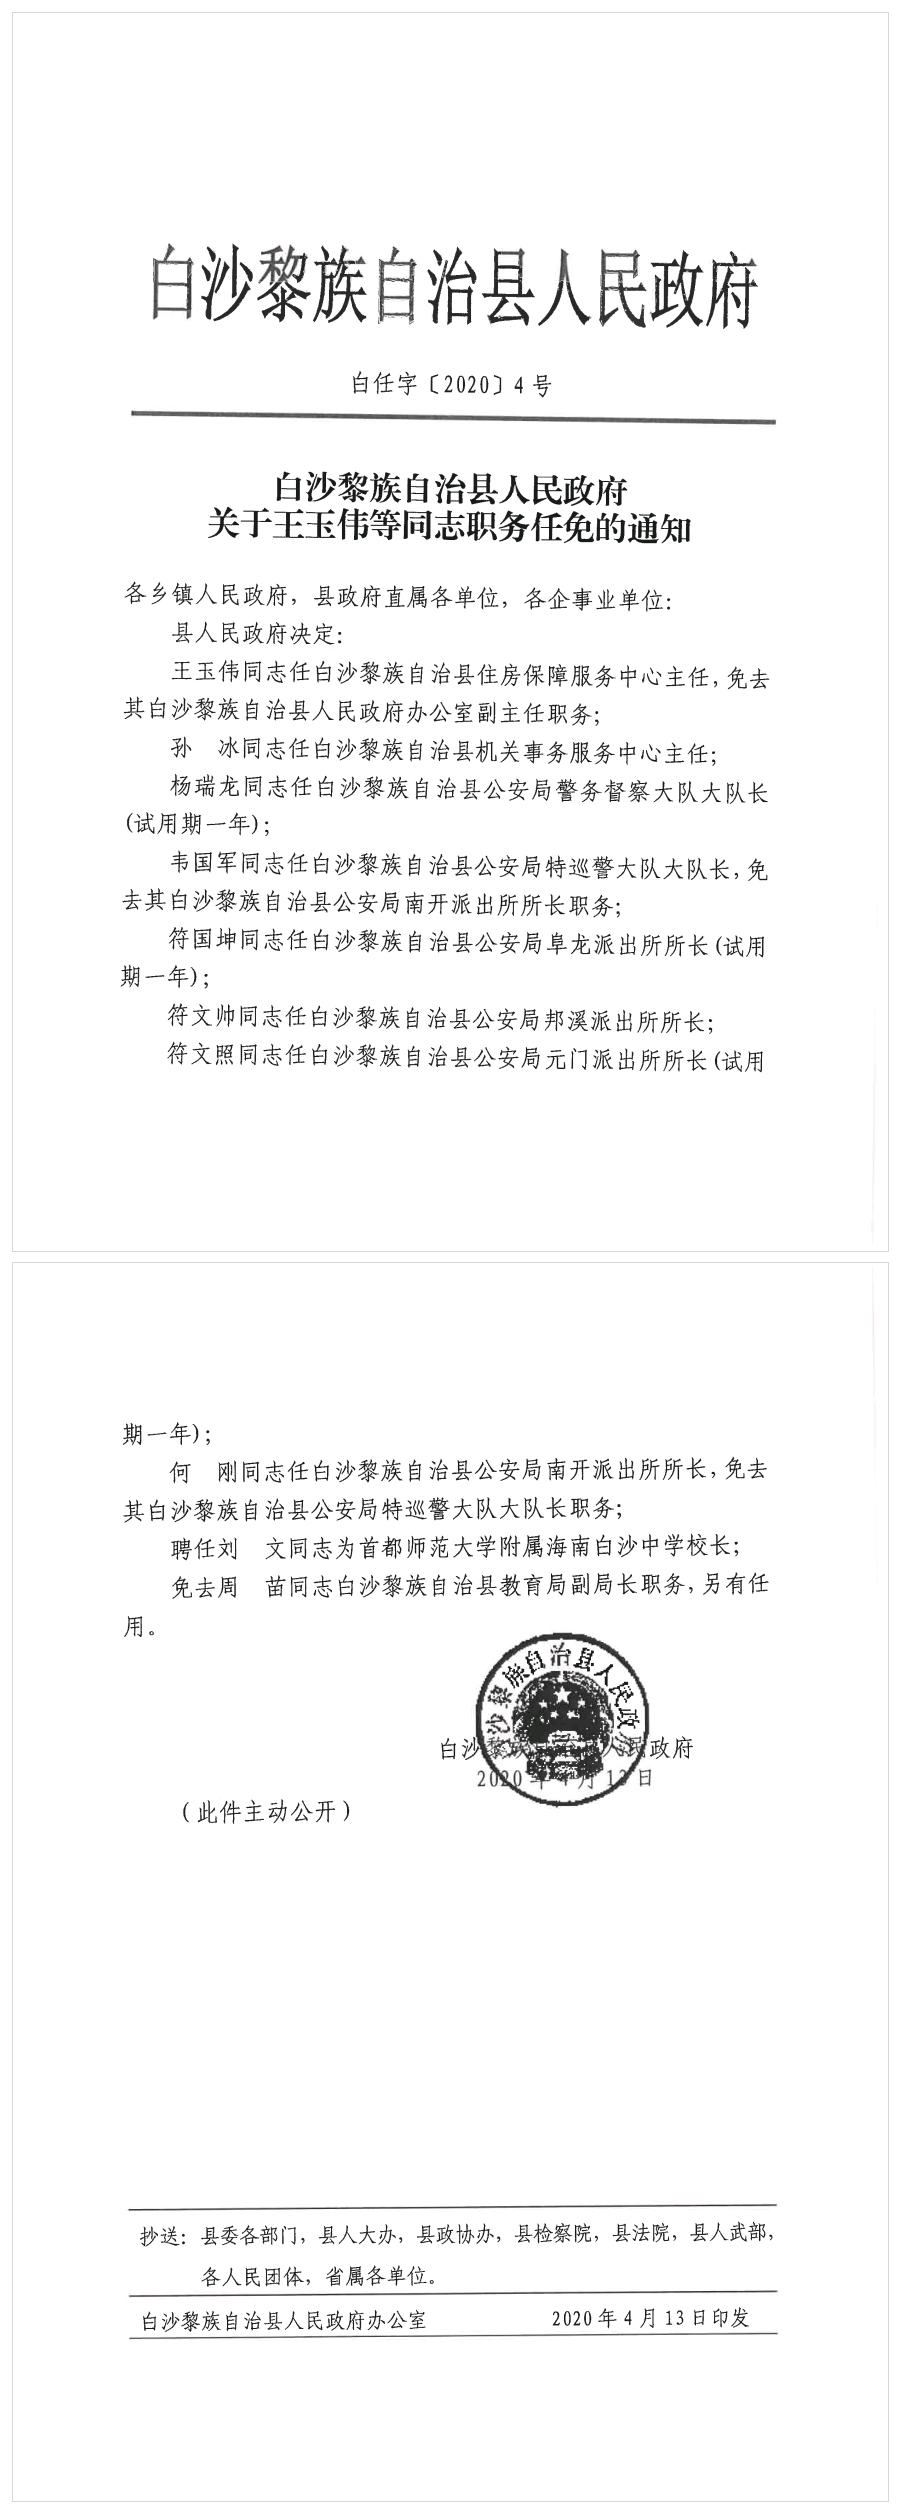 白沙黎族自治县人民政府关于王玉伟等同志职务任免的通知.png